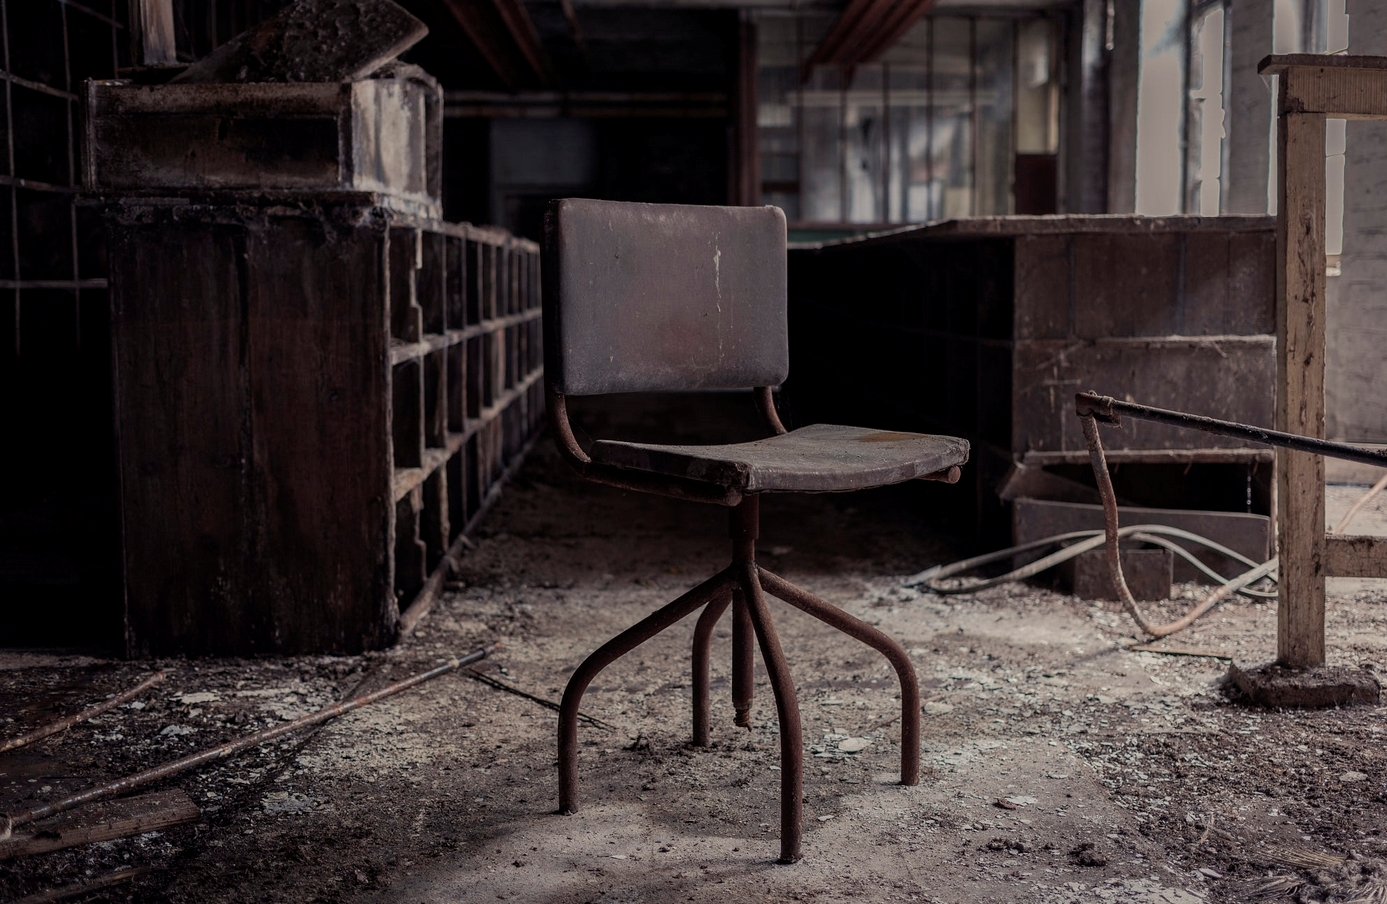 Abandoned Cutlery Works-Iain Bolton.jpg